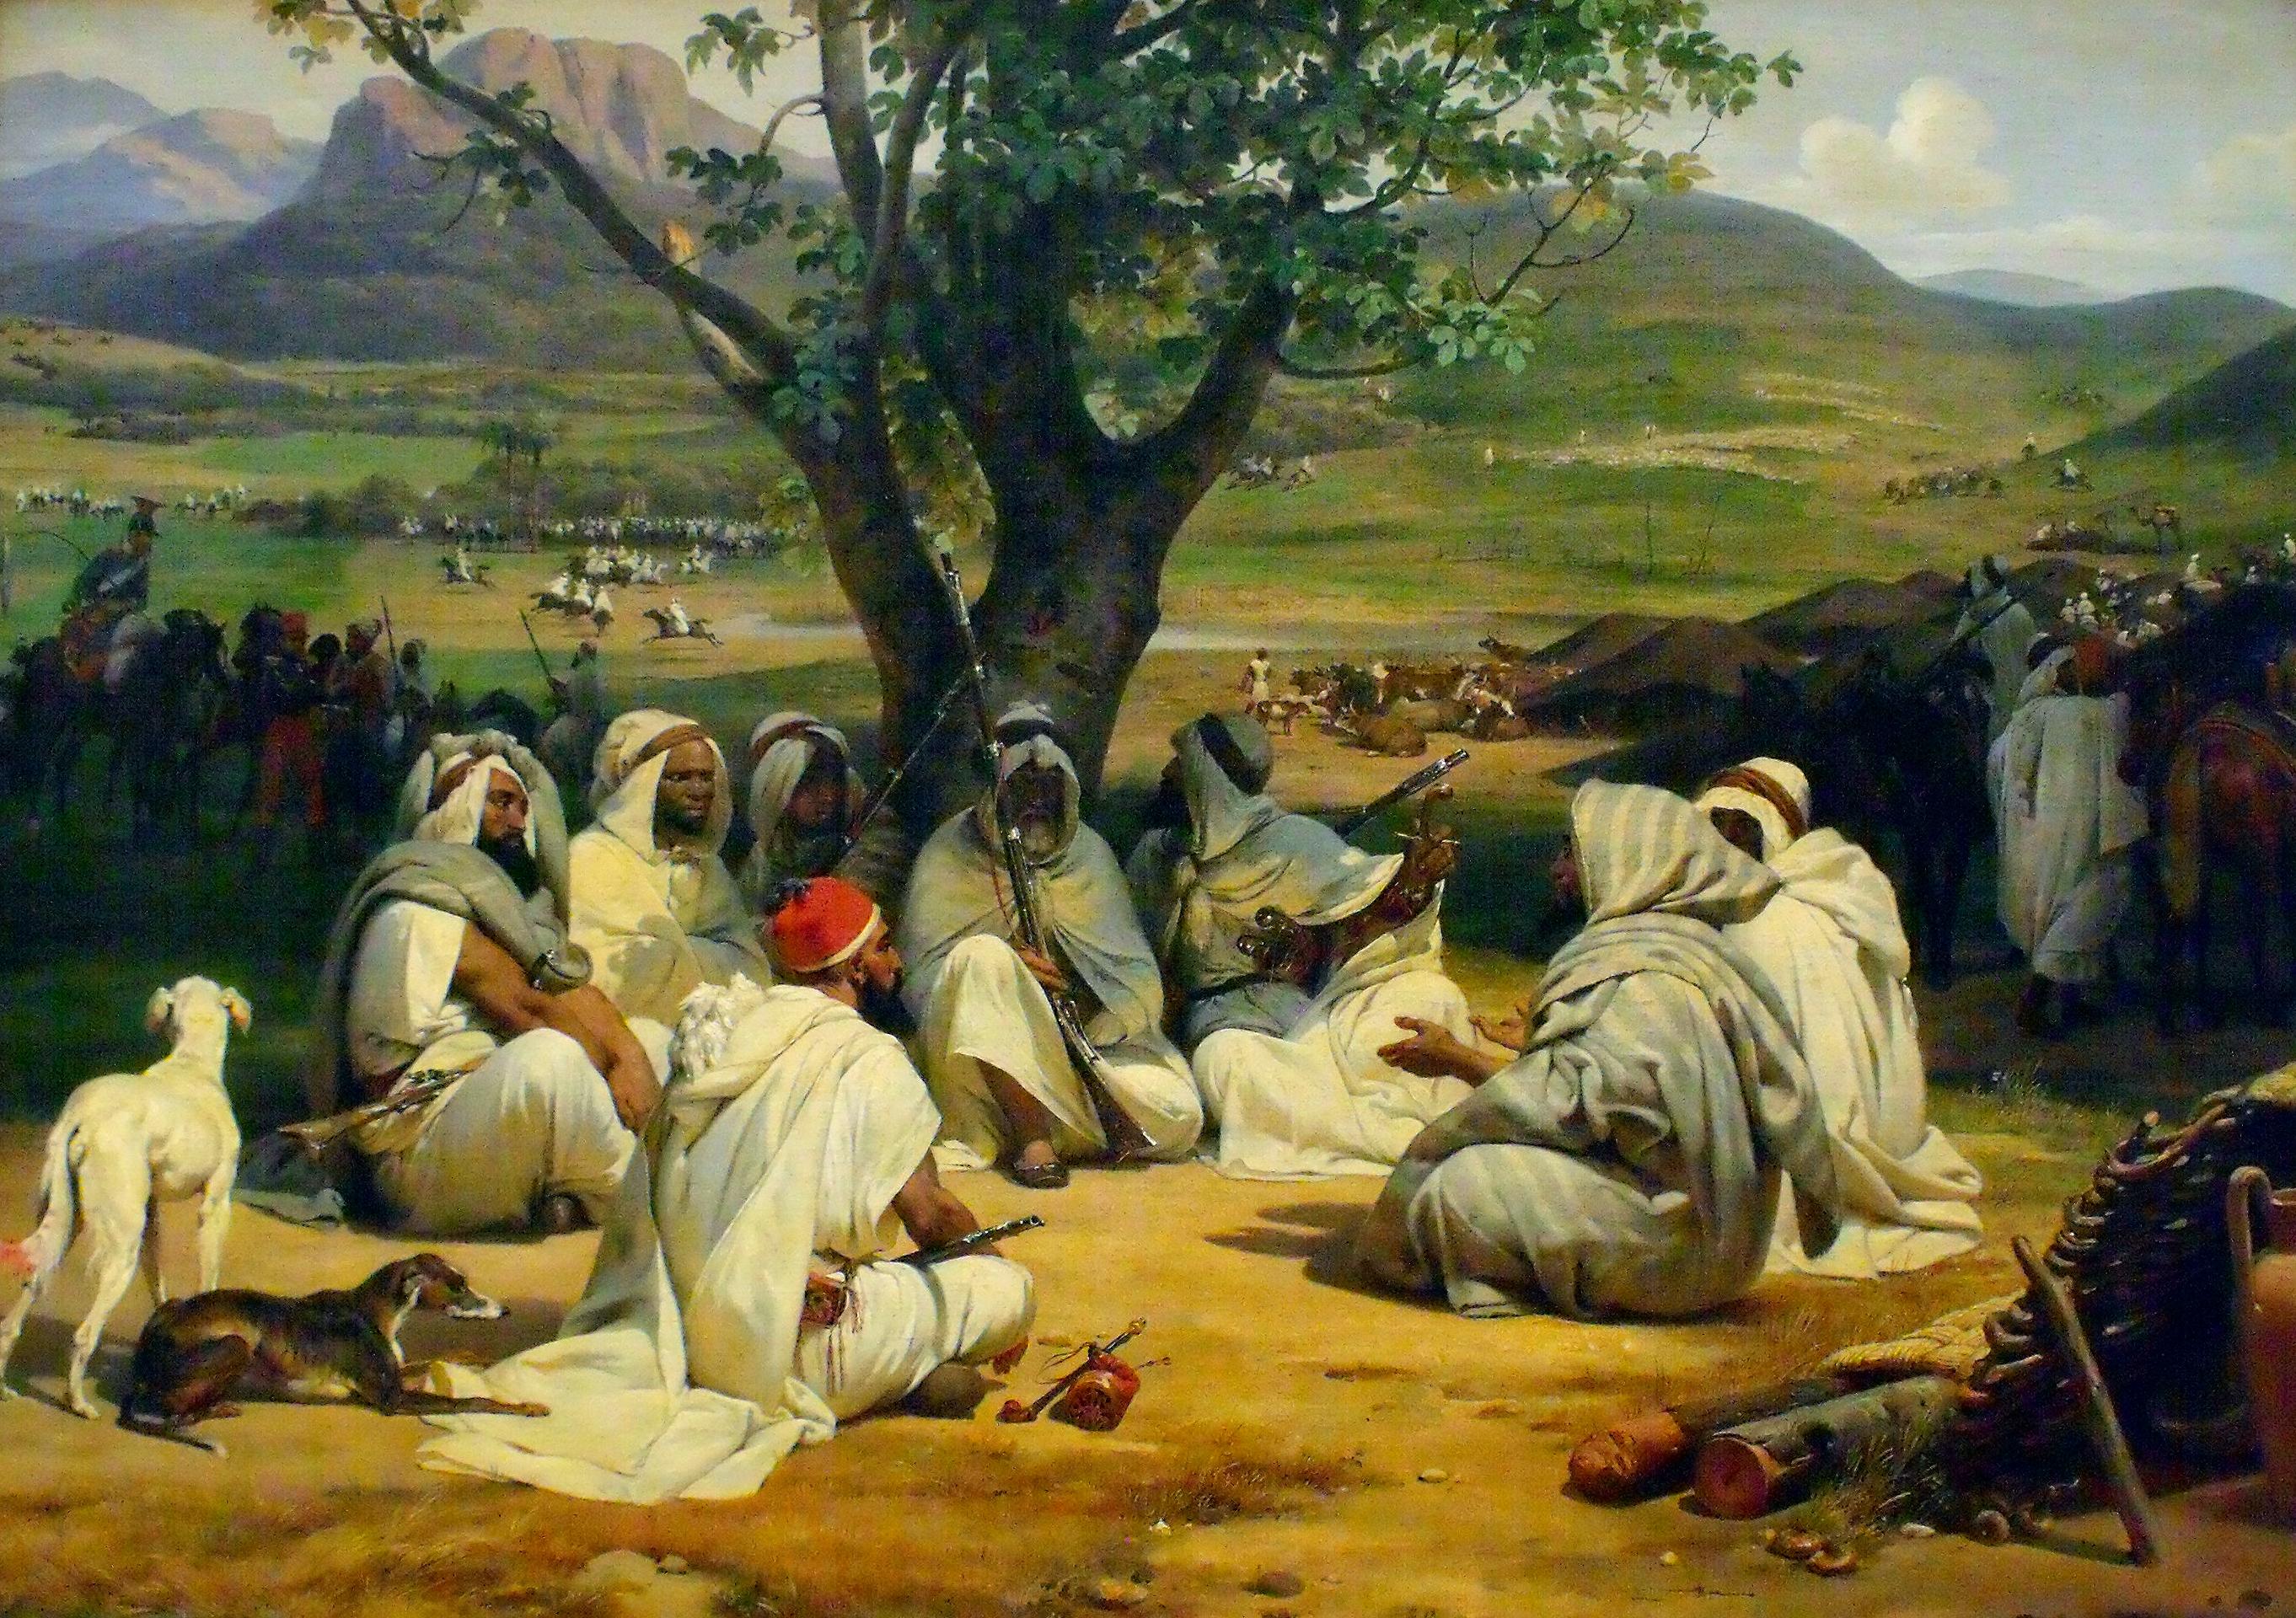 Reunión de árabes. Horace Vernet. Óleo sobre lienzo, 1834